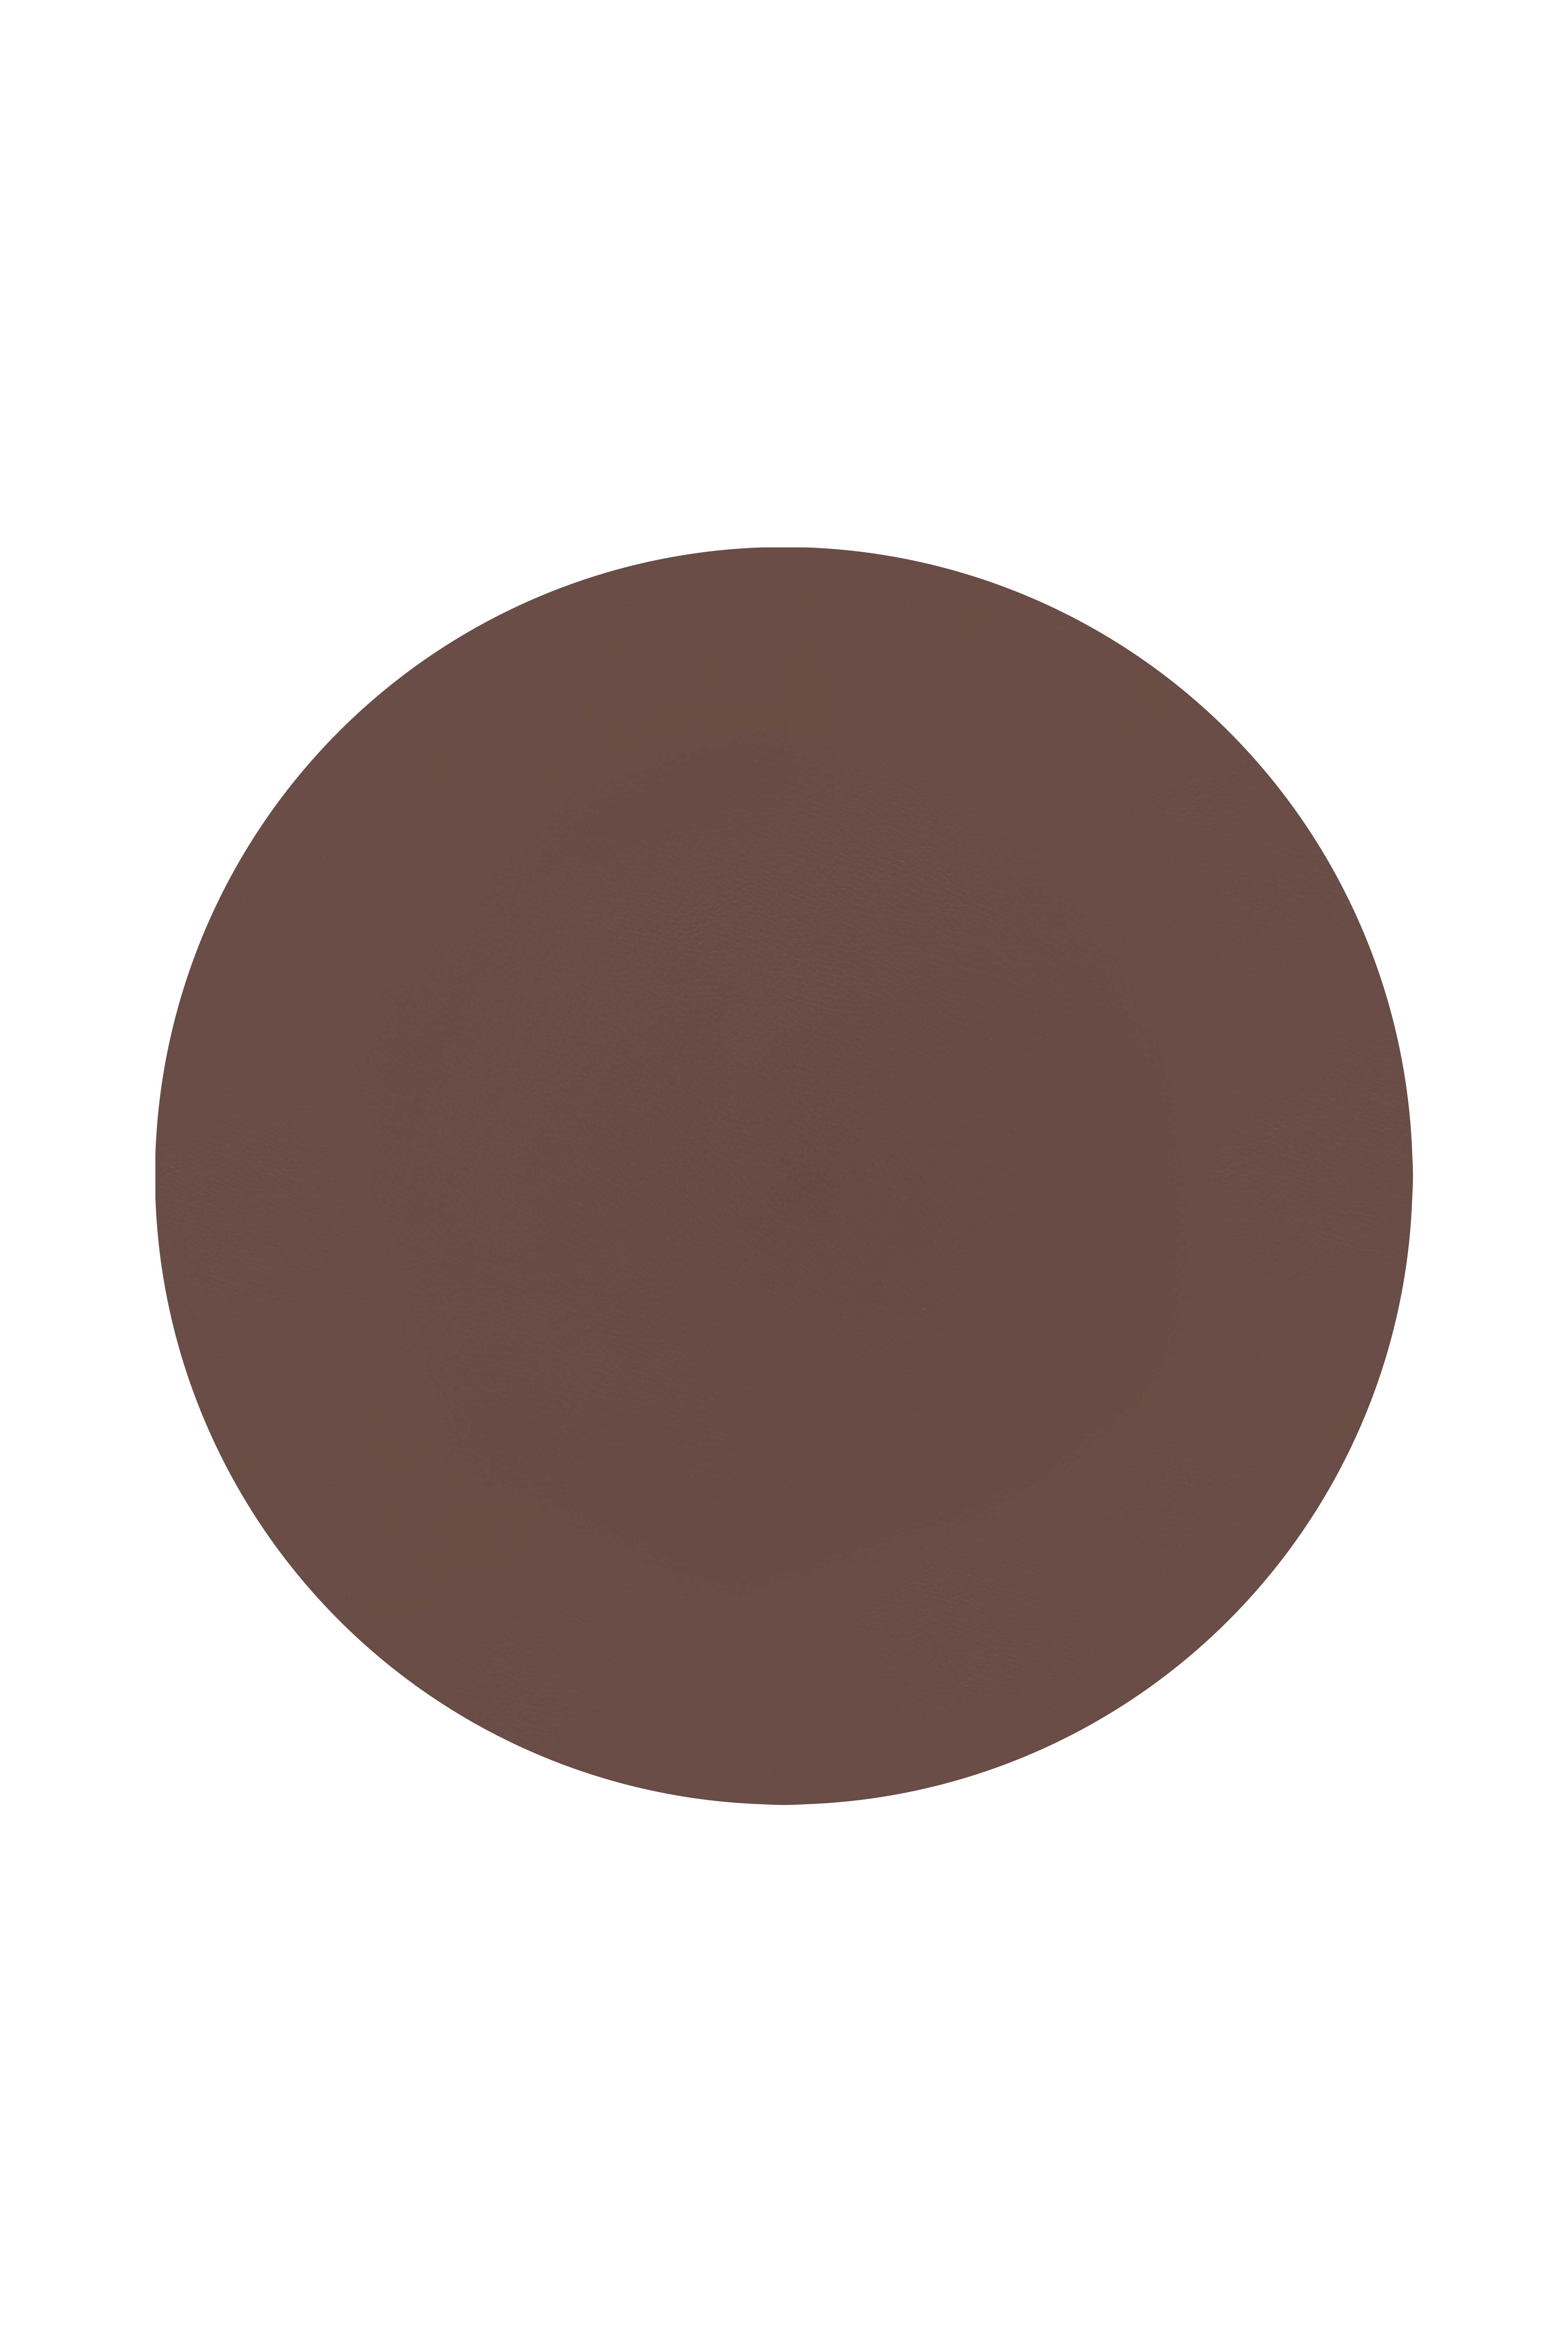 Set de table rond - TOGO - 38cm, brown